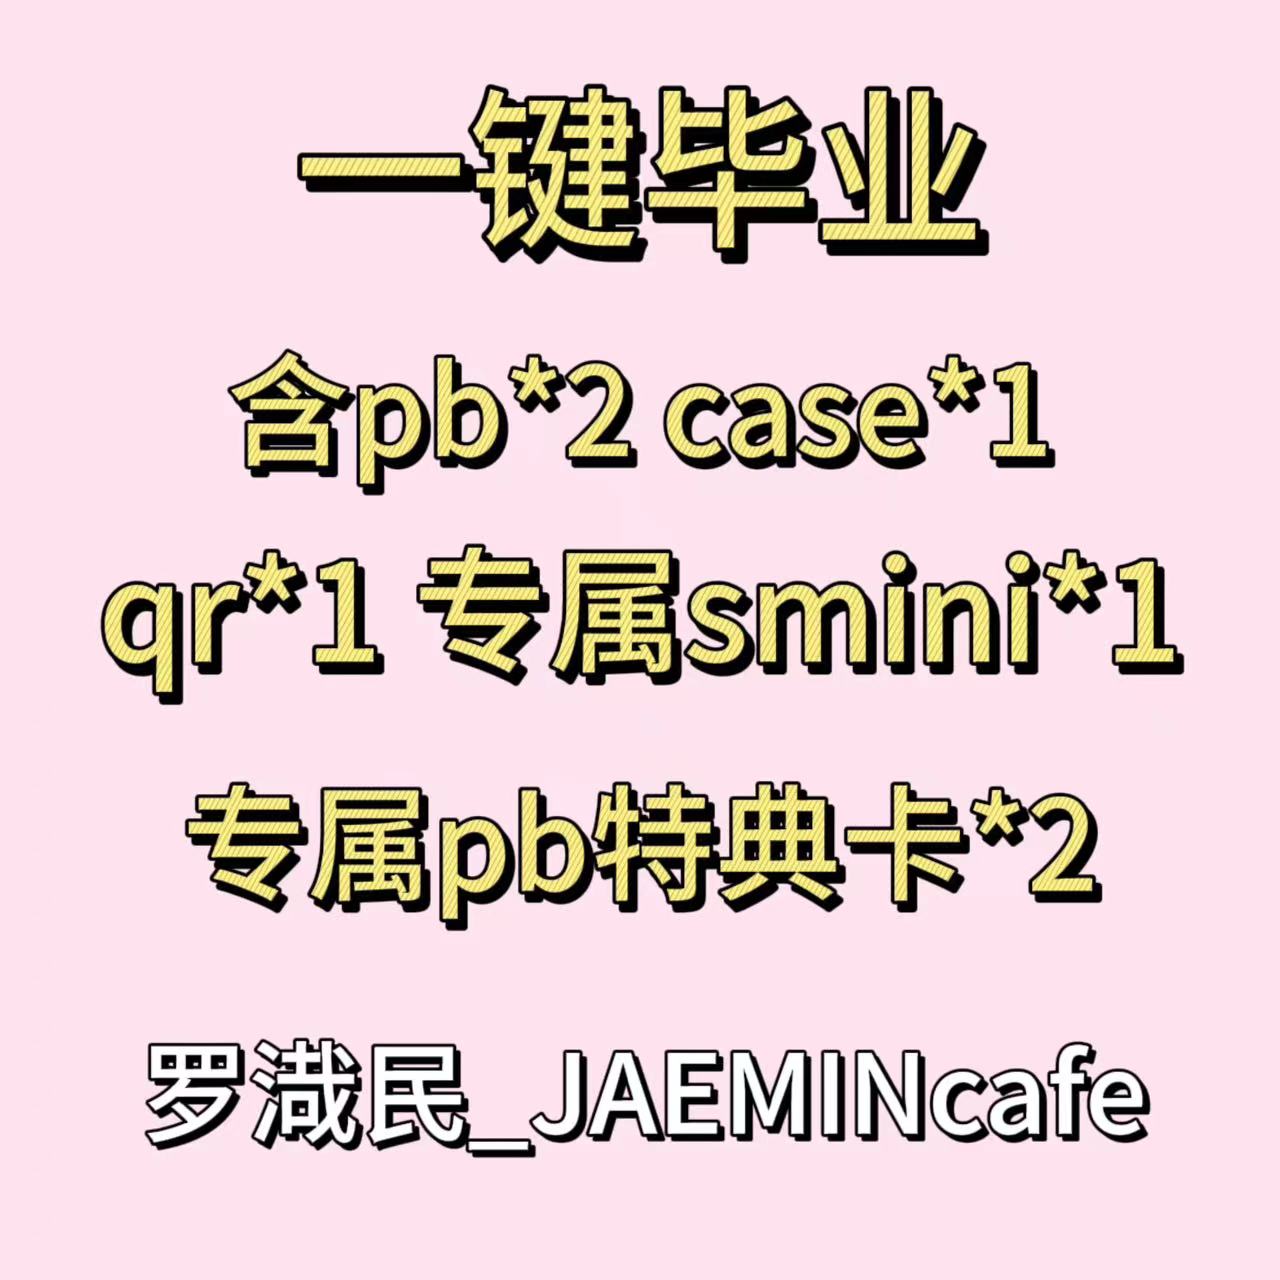 [全款 裸专] [JAEMINcafe专属链接] [Ktown4u特典赠送] [一键毕业] NCT DREAM - [DREAM( )SCAPE] (Photobook Ver.+Case Ver+SMini Ver+QR Ver.)_罗渽民吧_JAEMINbar